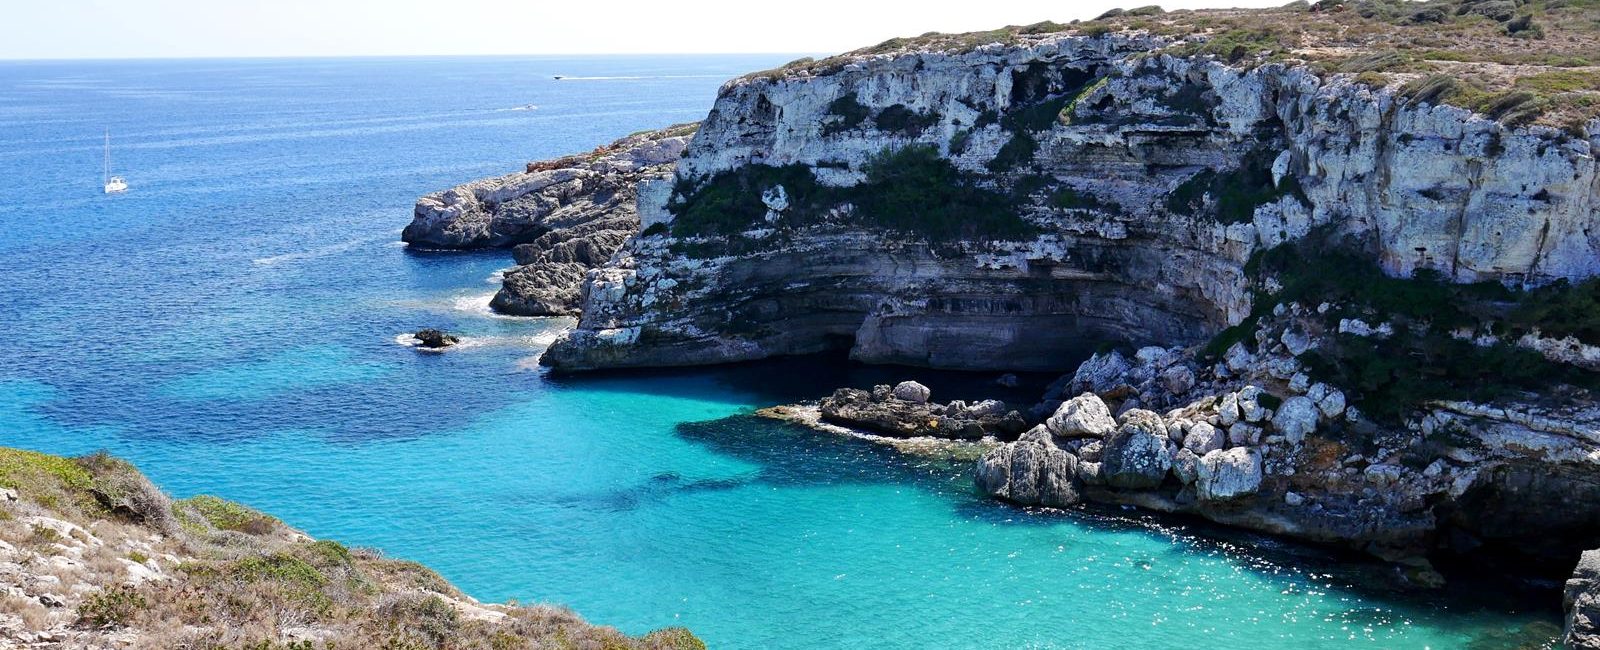 Cala Marmols – virgin bays on Majorca.